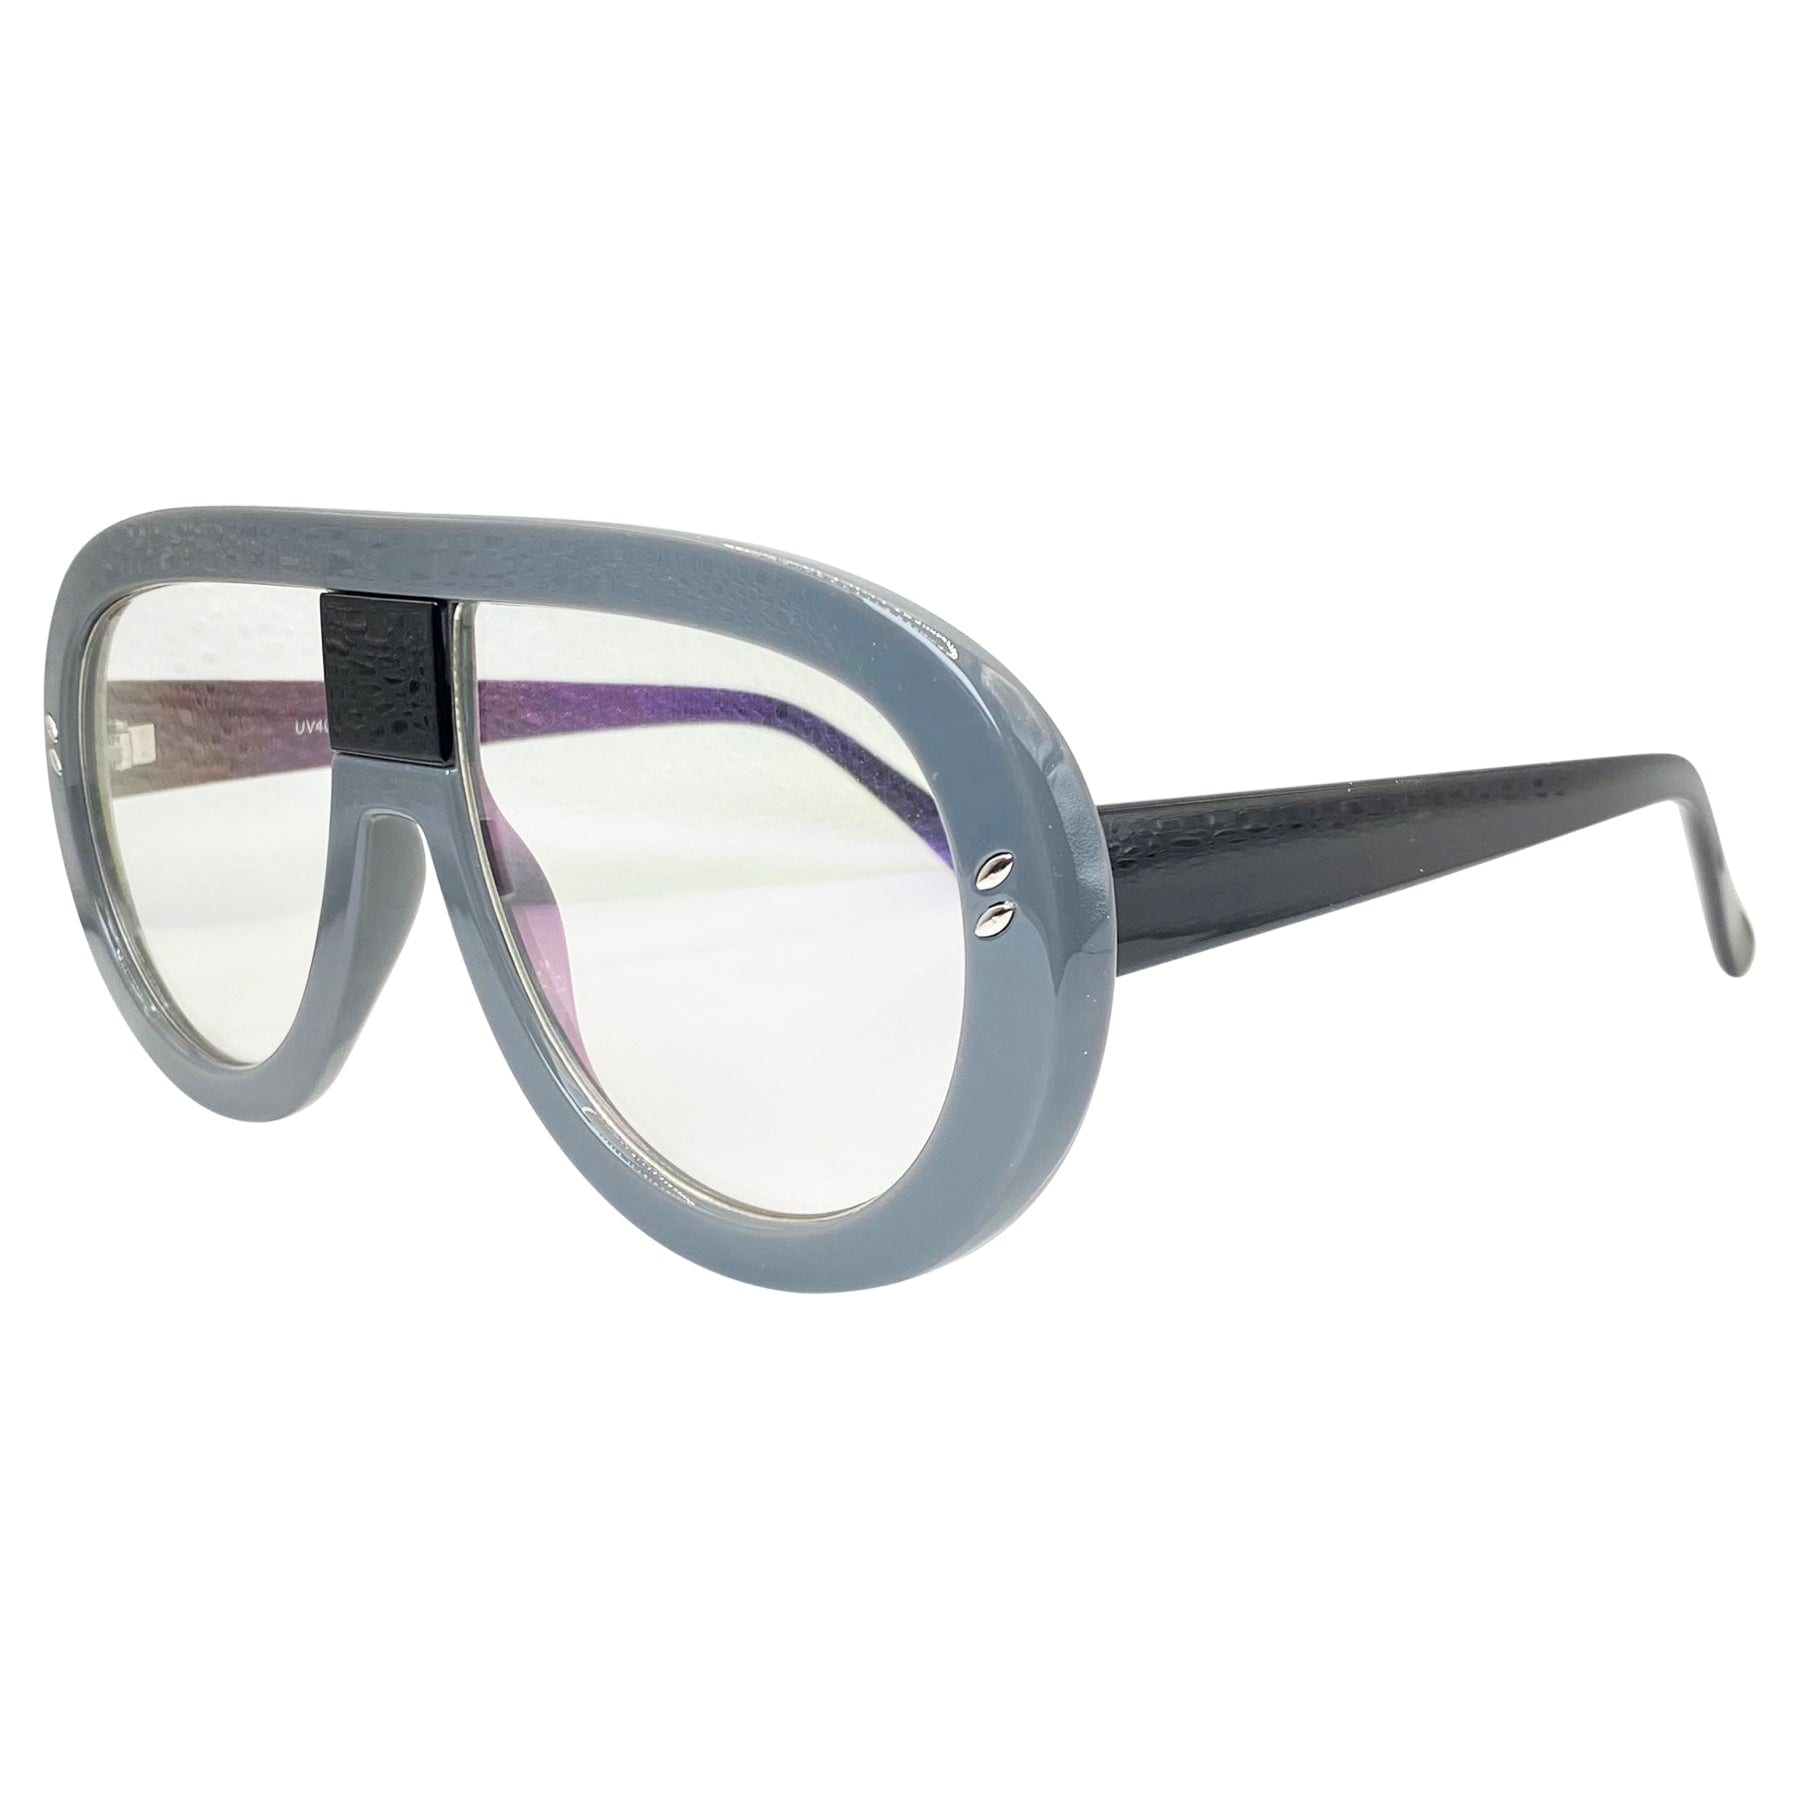 gray 70s inspired chunky aviator glasses men 